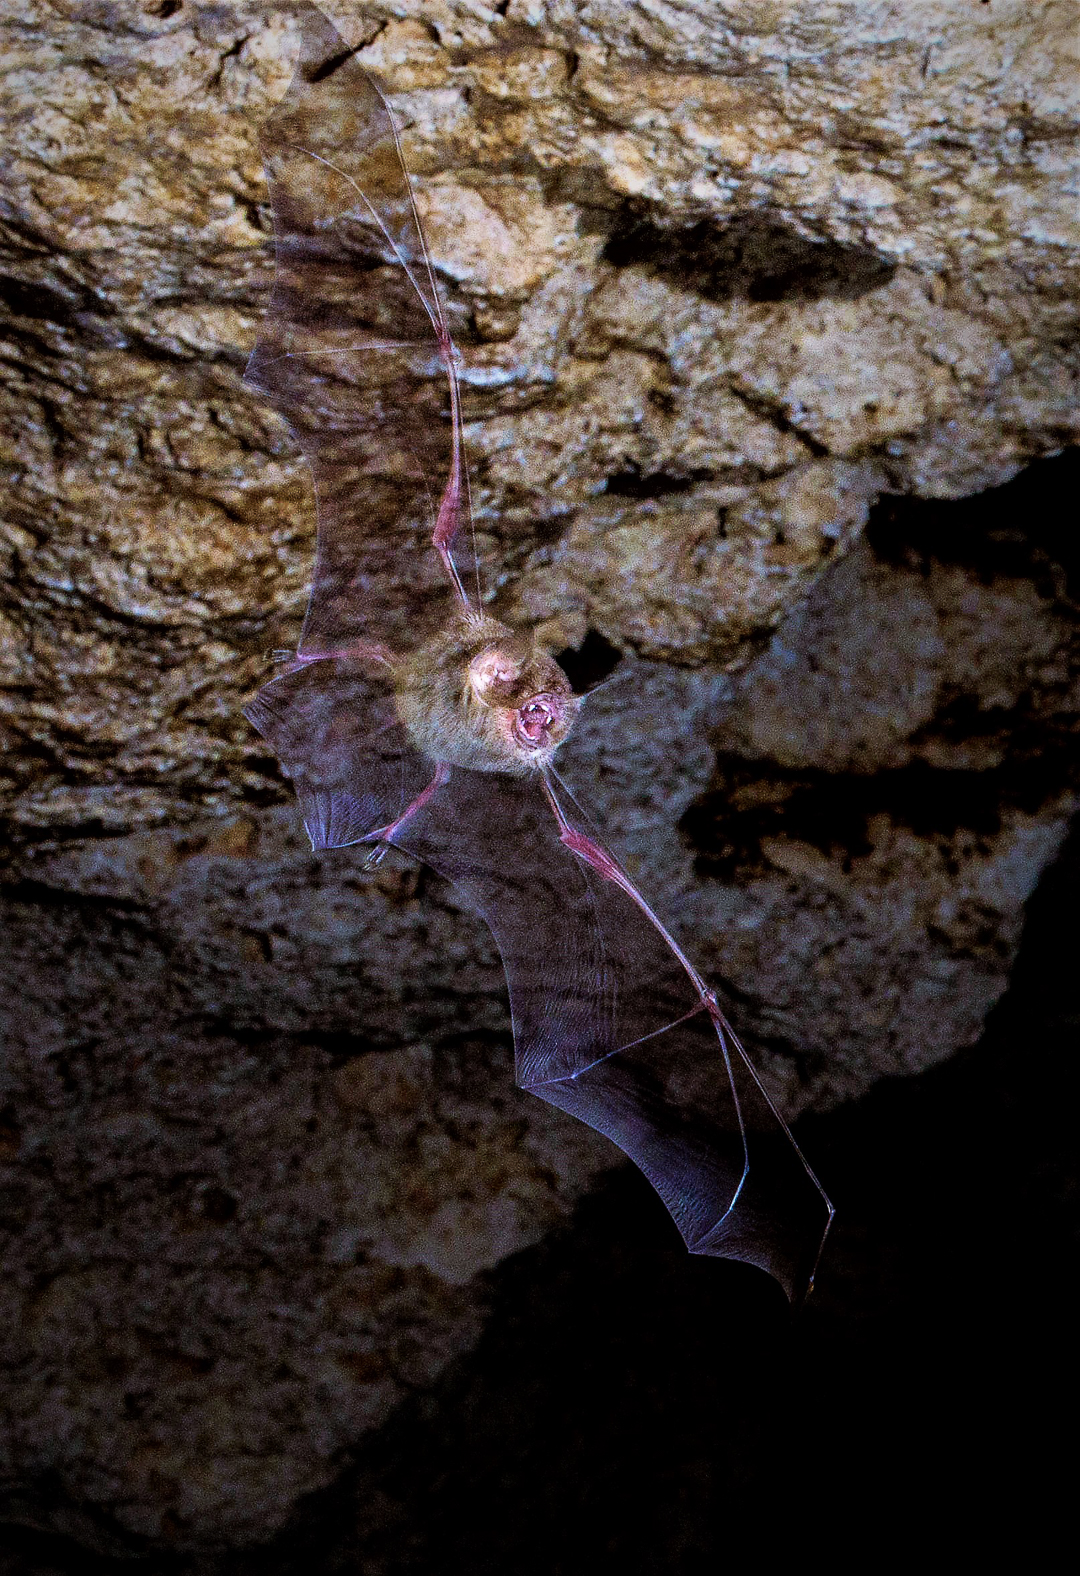 Murciélago Bigotudo Grande (Pteronotus parnelli). Foto tomada durante el éxodo nocturno en la caverna La Barca, Parque Nacional Guanahacabibes. Agradecimientos a Brock y Sherry Fenton (Foto: Jose Manuel de la Cruz Mora).